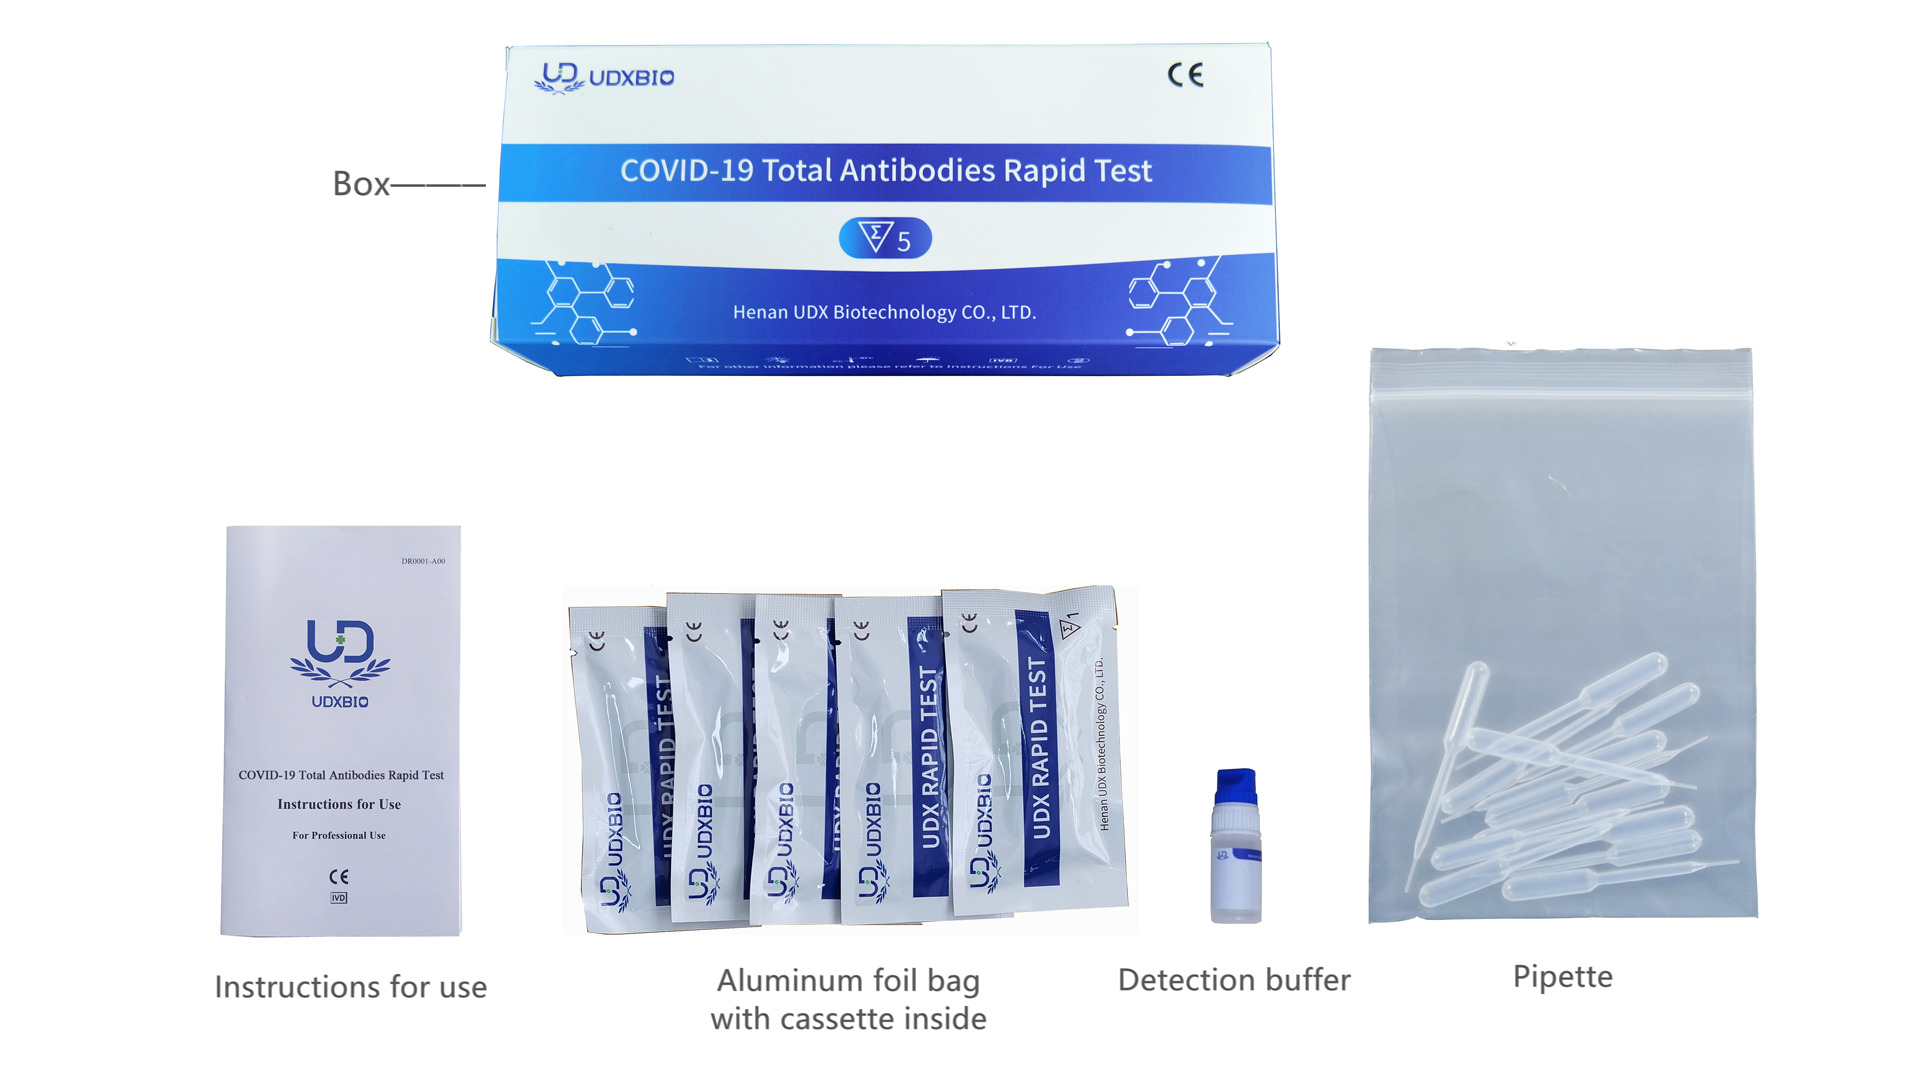 Disponibilité et accessibilité des anticorps totaux Covid-19 Test rapide: ce que vous devez savoir